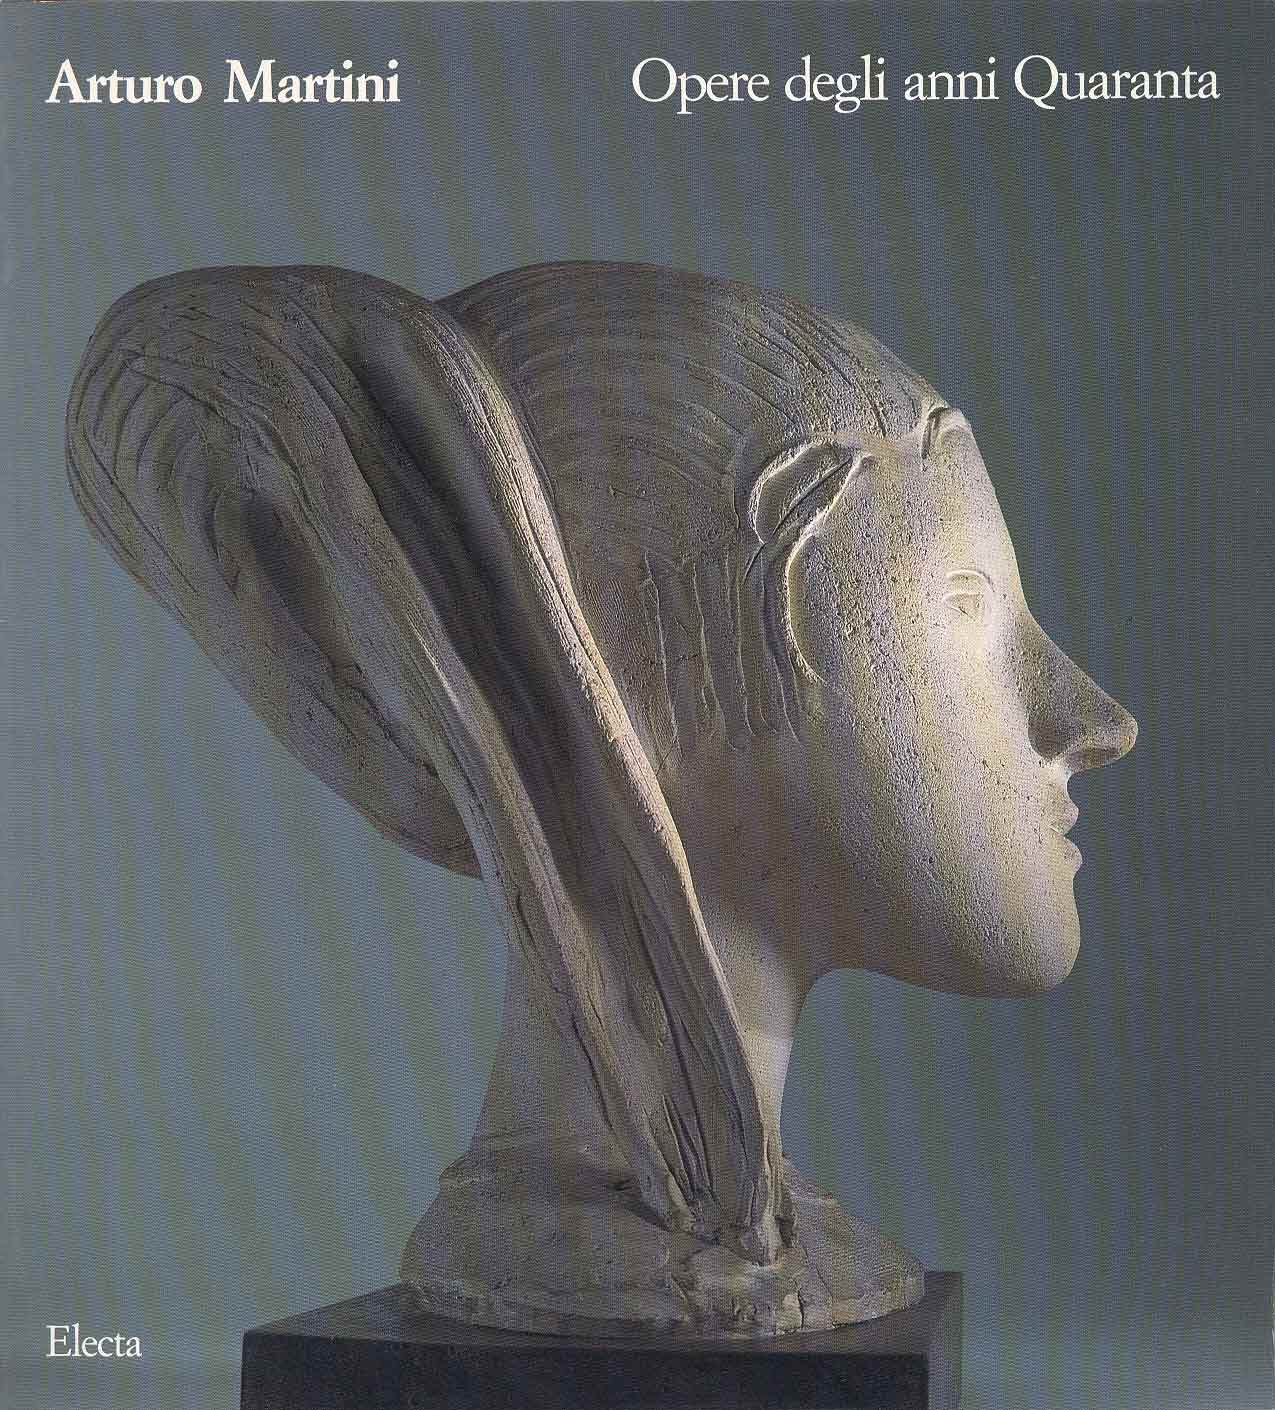 Martini - Arturo Martini. Opere degli anni Quaranta